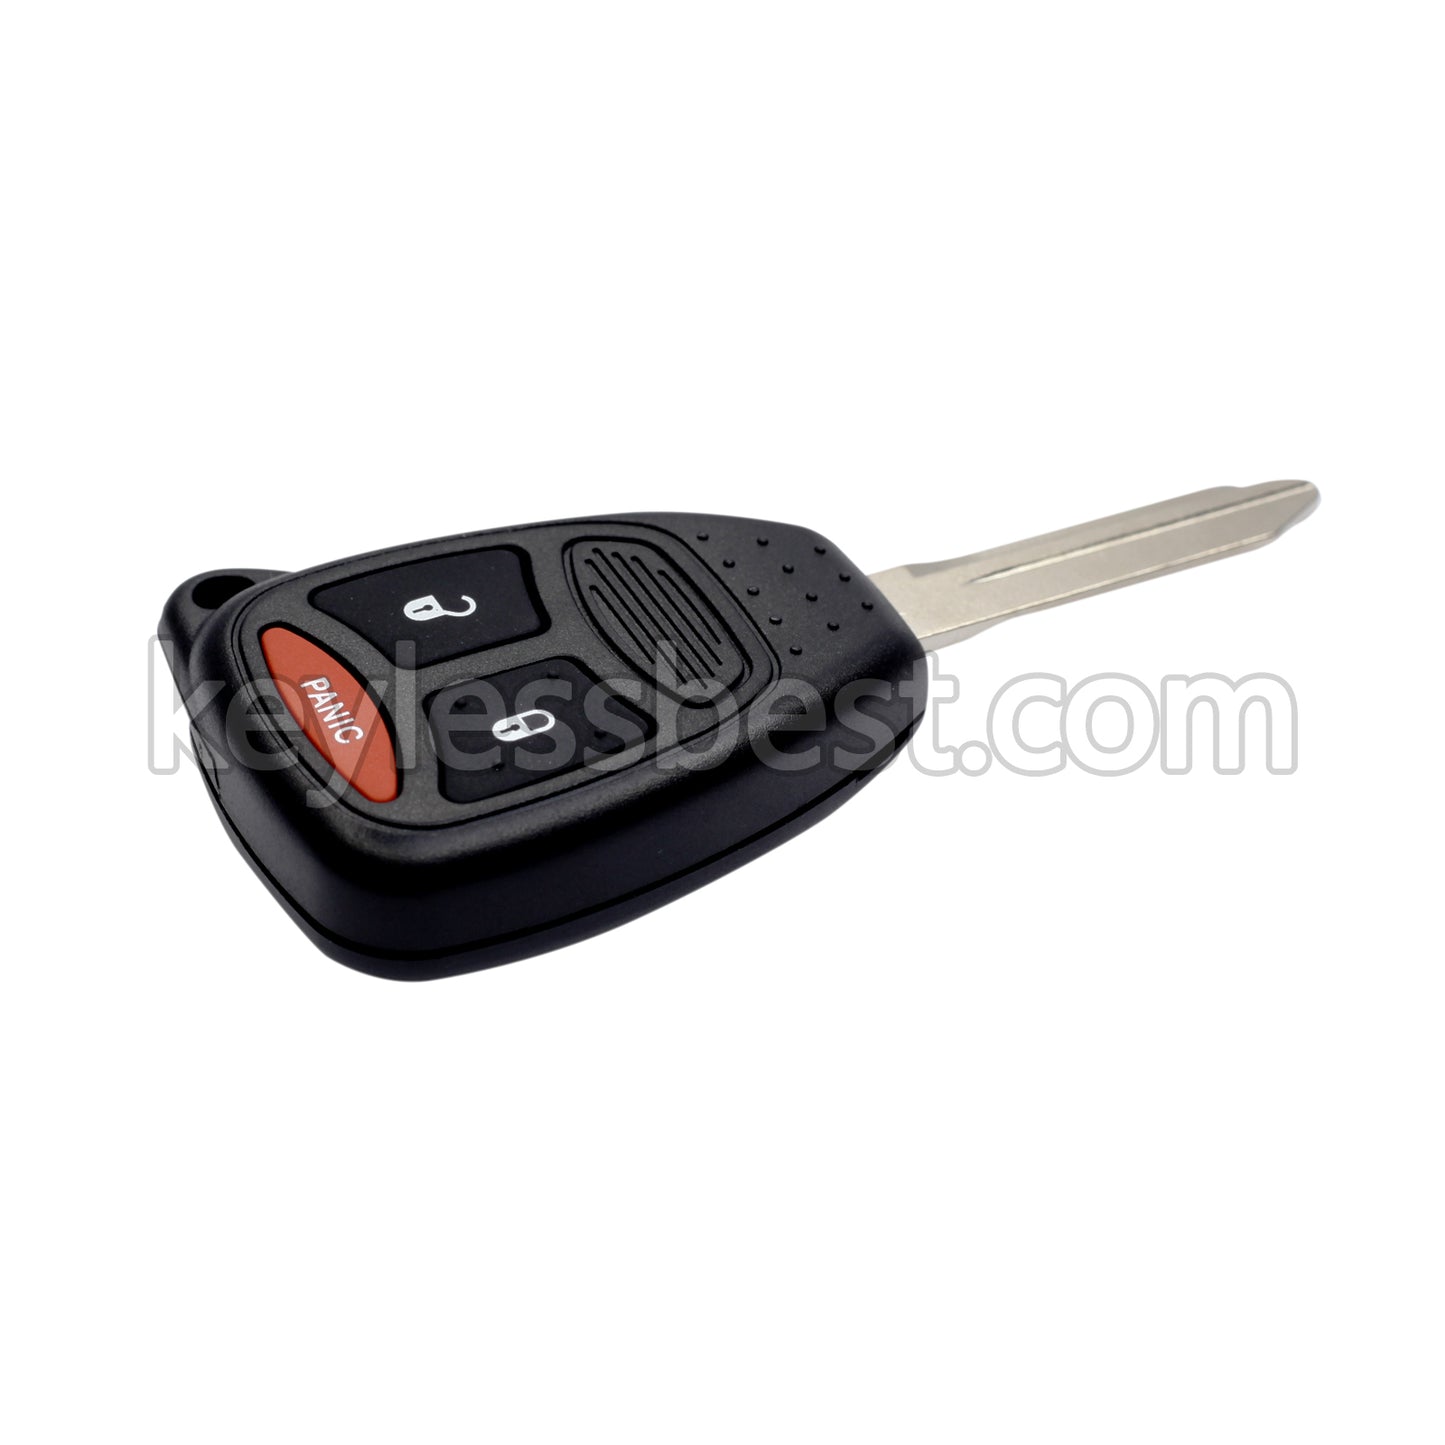 2004-2013 Dodge Caliber Dakota Durango Magnum Nitro Ram Mitsubishi Raider / 3 Buttons Remote Key / KOBDT04A / 315MHz